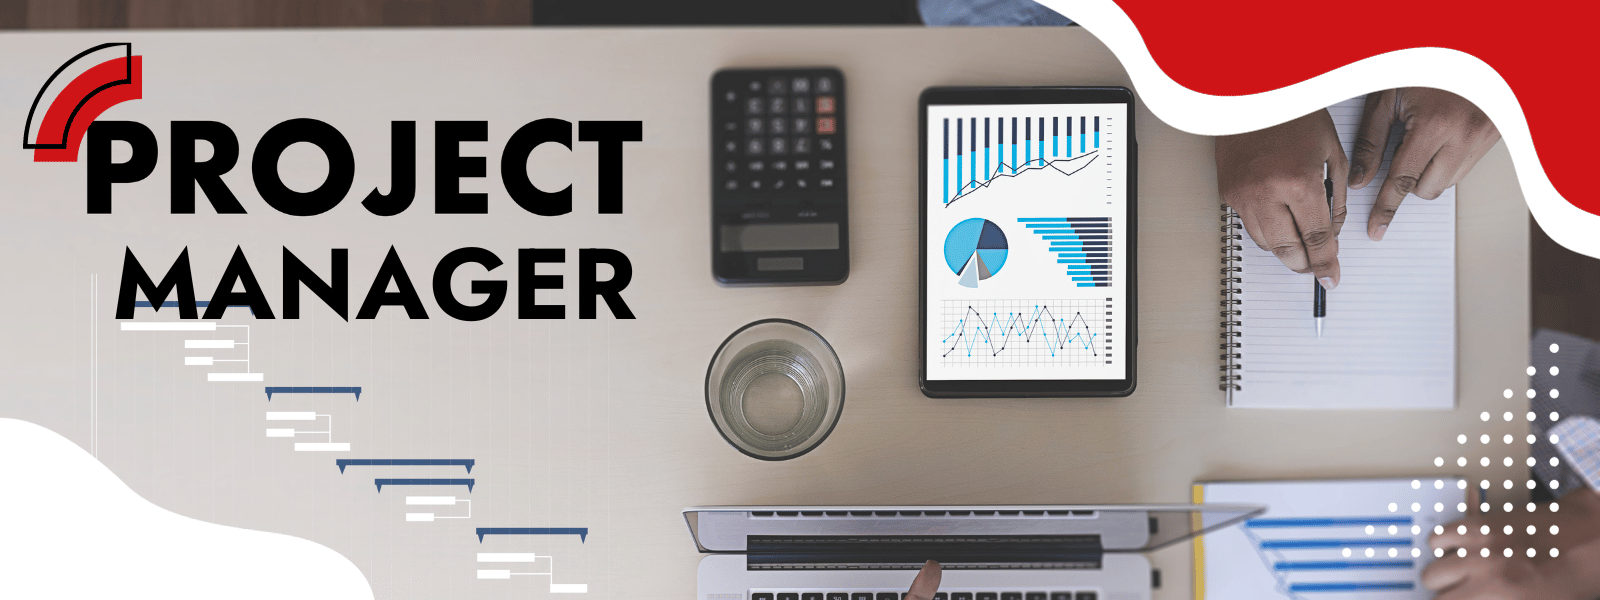 Kim jest Project Manager i czym się zajmuje?